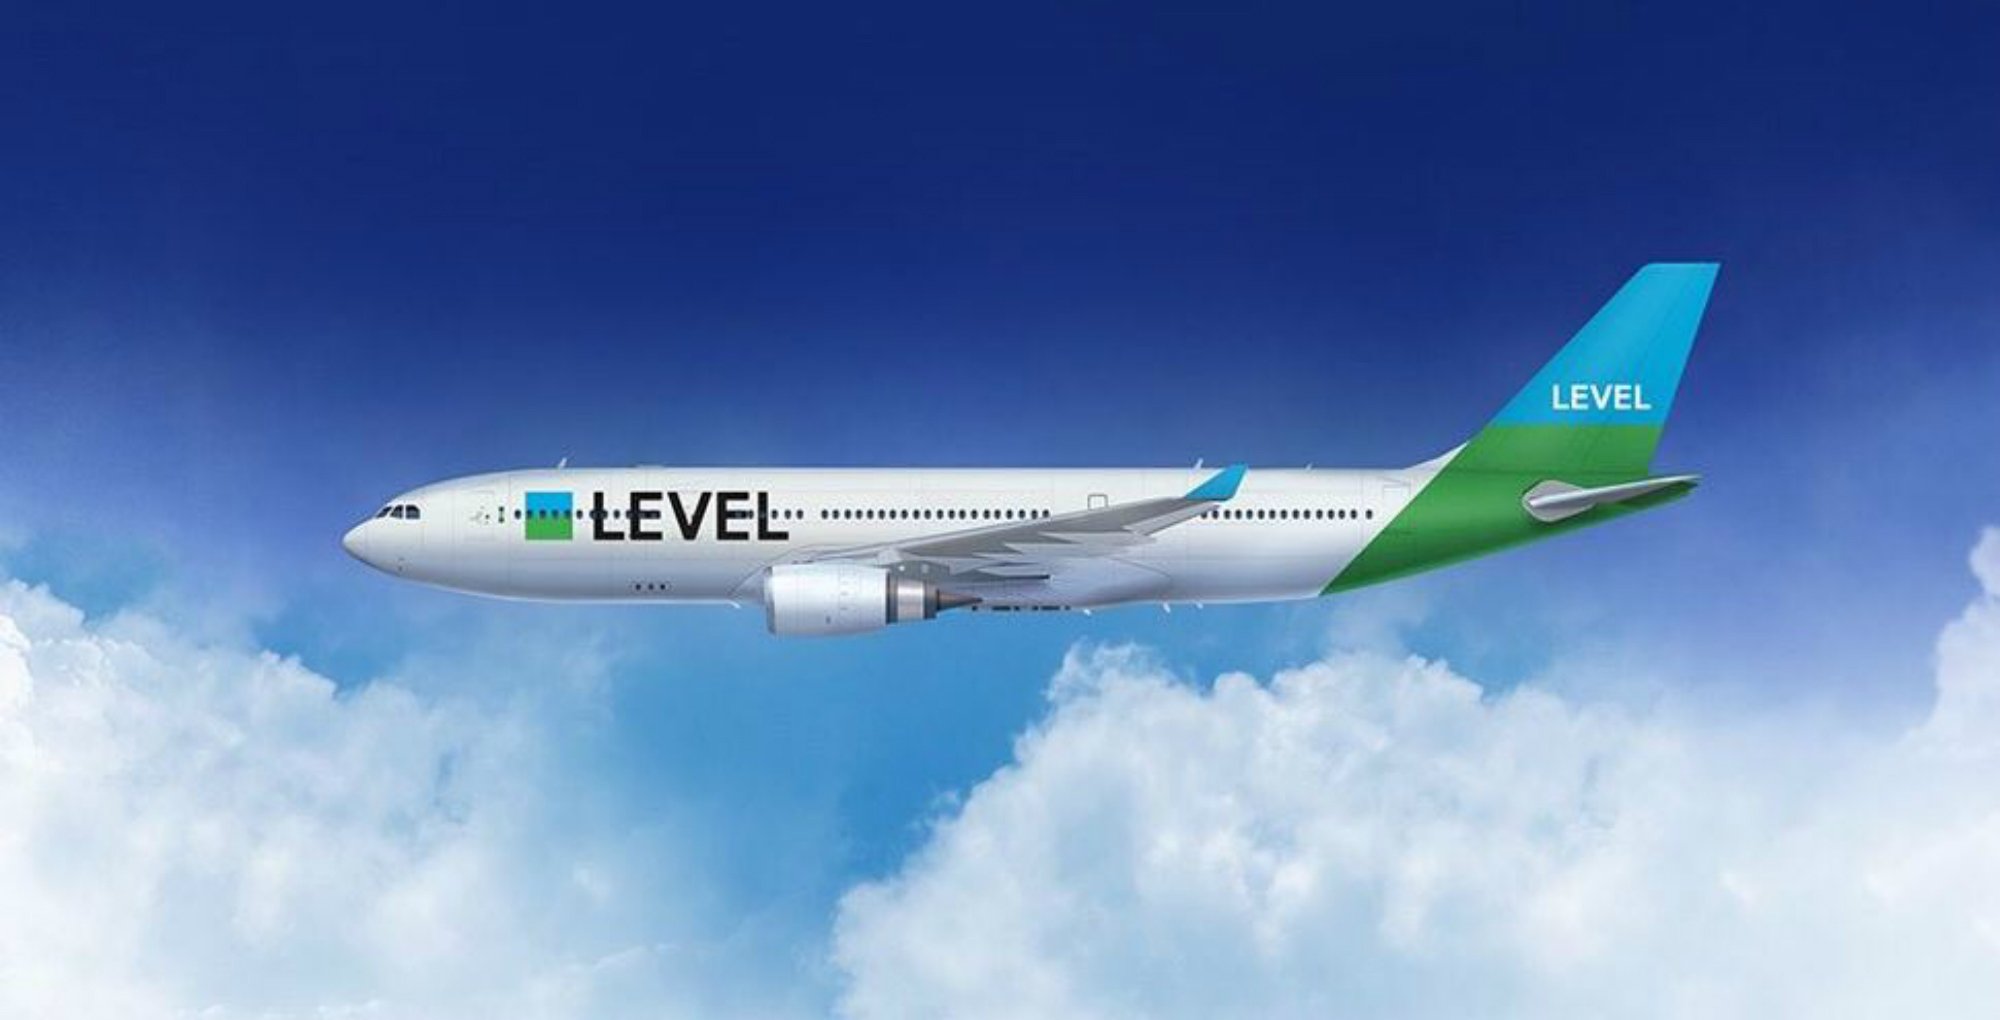 Level connectarà Barcelona amb Santiago de Xile i Nova York el 2019